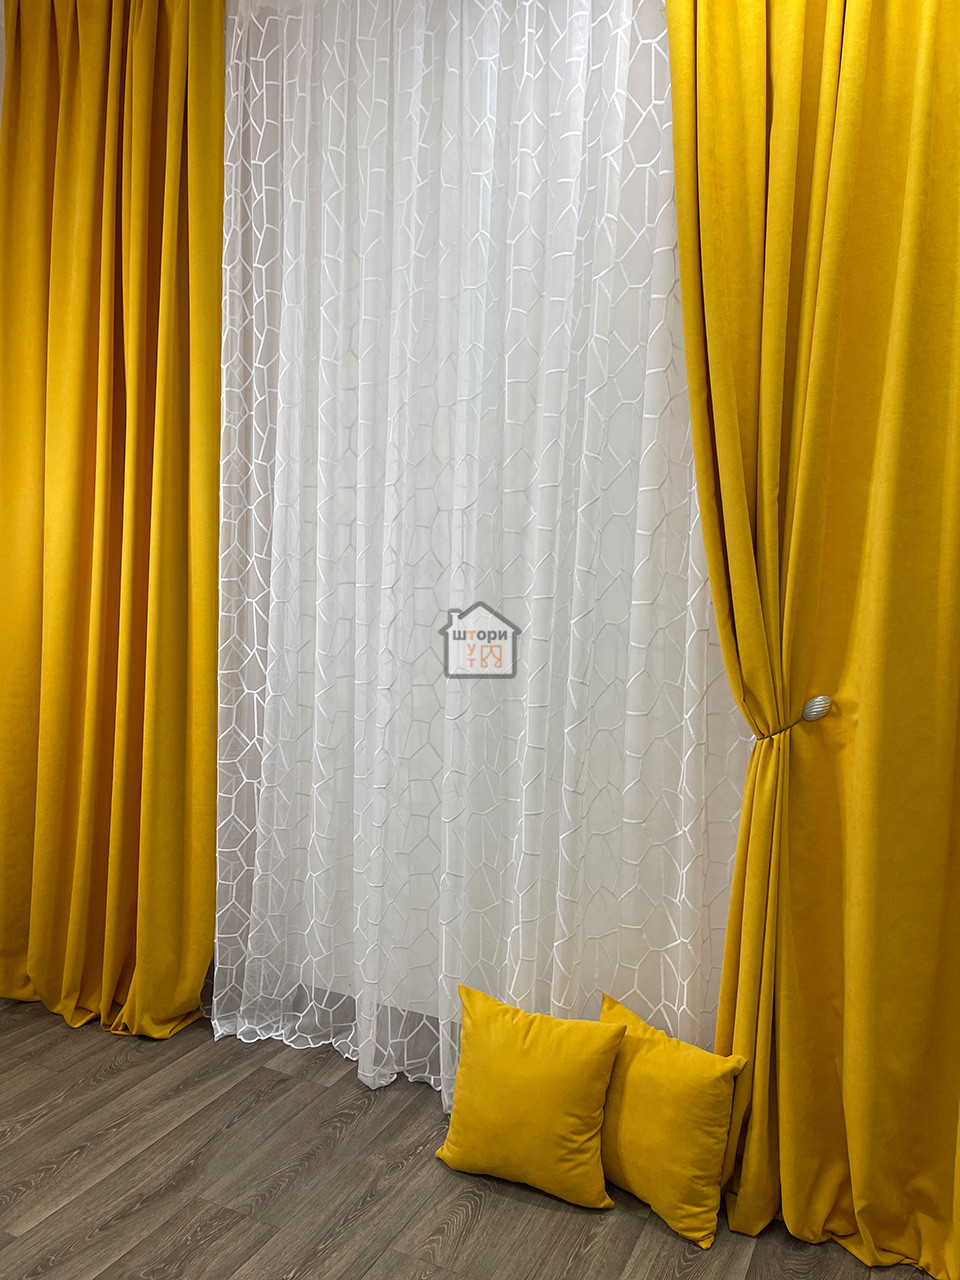 Штори мікровелюр тканина №344 diamond, колір жовтий, в спальню, зал, кімнату, комплект 2 штори